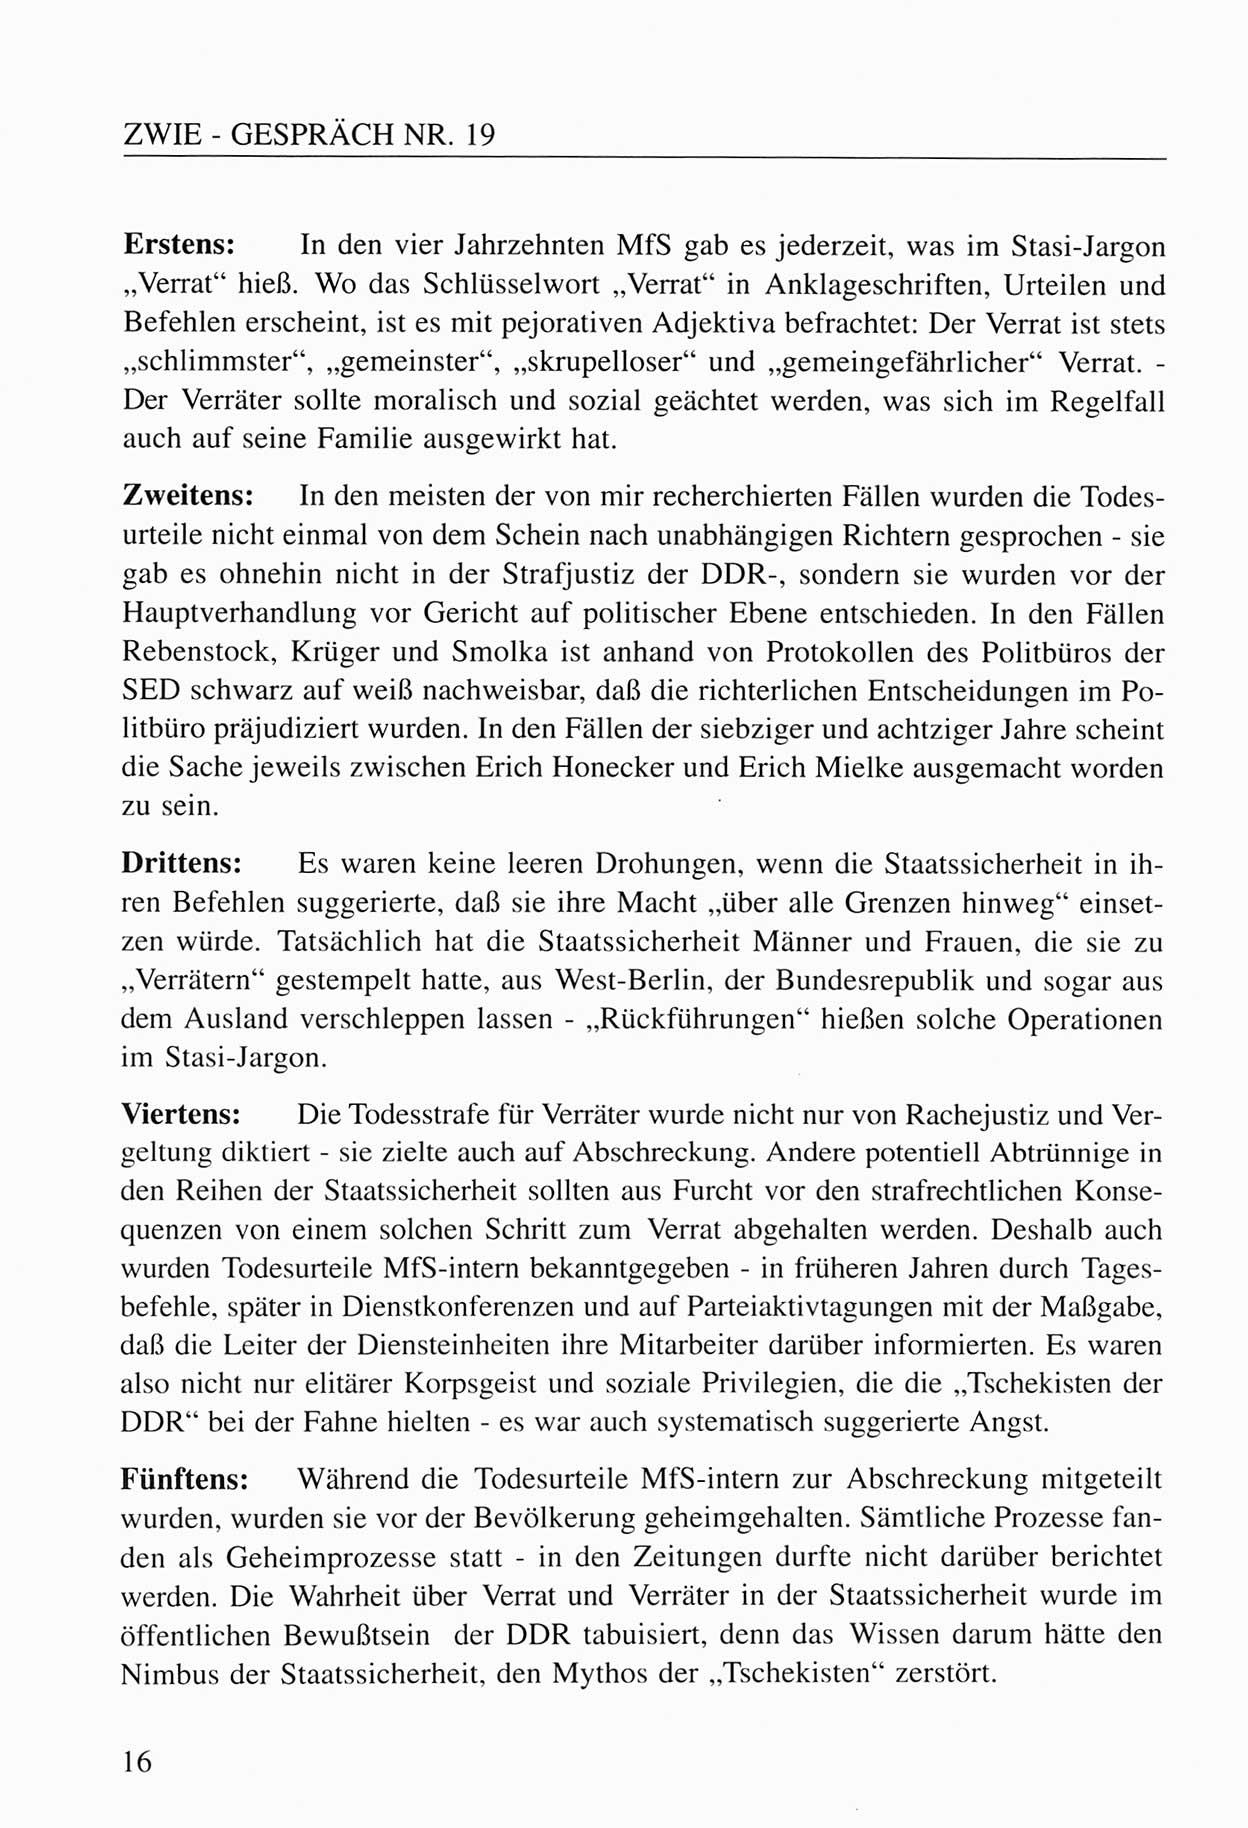 Zwie-Gespräch, Beiträge zum Umgang mit der Staatssicherheits-Vergangenheit [Deutsche Demokratische Republik (DDR)], Ausgabe Nr. 19, Berlin 1994, Seite 16 (Zwie-Gespr. Ausg. 19 1994, S. 16)